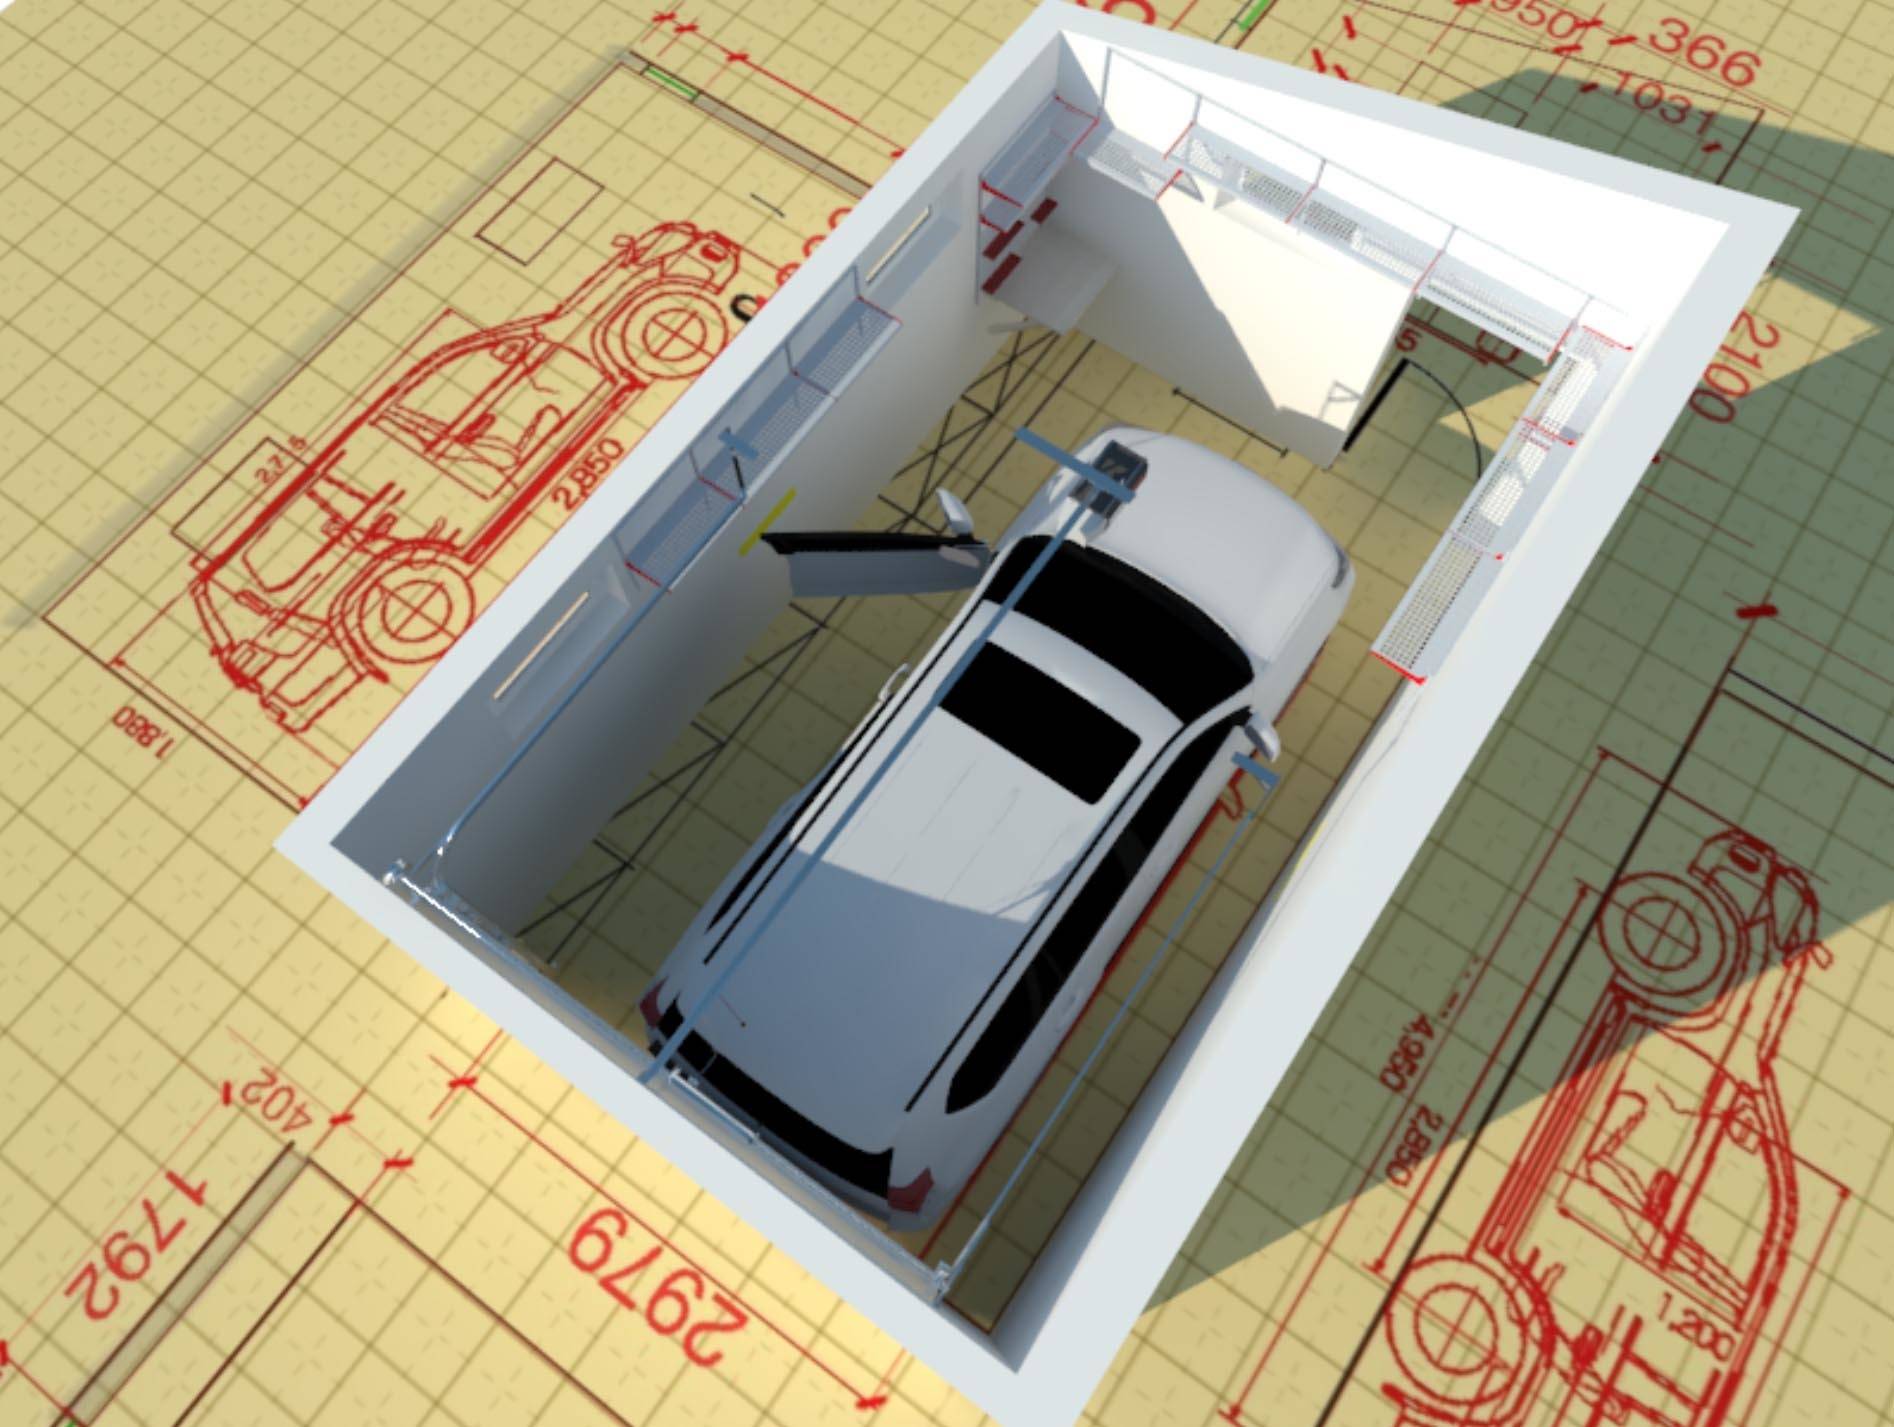 Расчёт размеров гаражных ворот — требования к конструкции и выбор оптимальных параметров